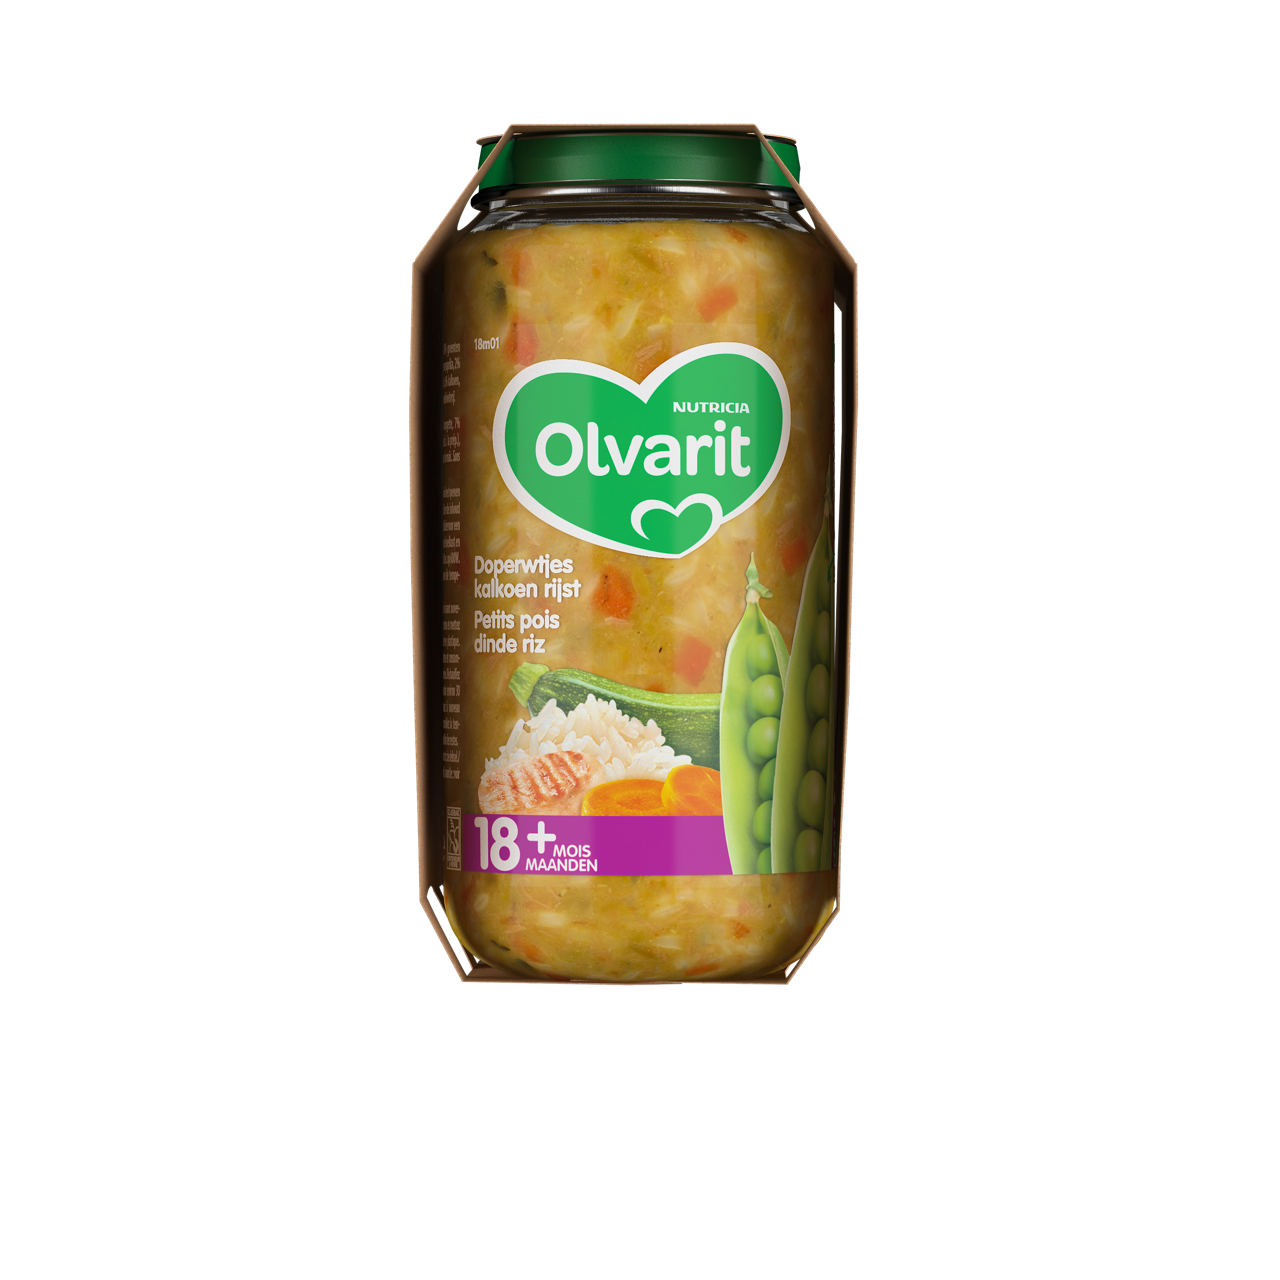 Olvarit Petits pois dinde riz (250 g). Consultez notre site web Olvarit.be pour plus d'info sur alimentation pour bébé et les produits Olvarit.